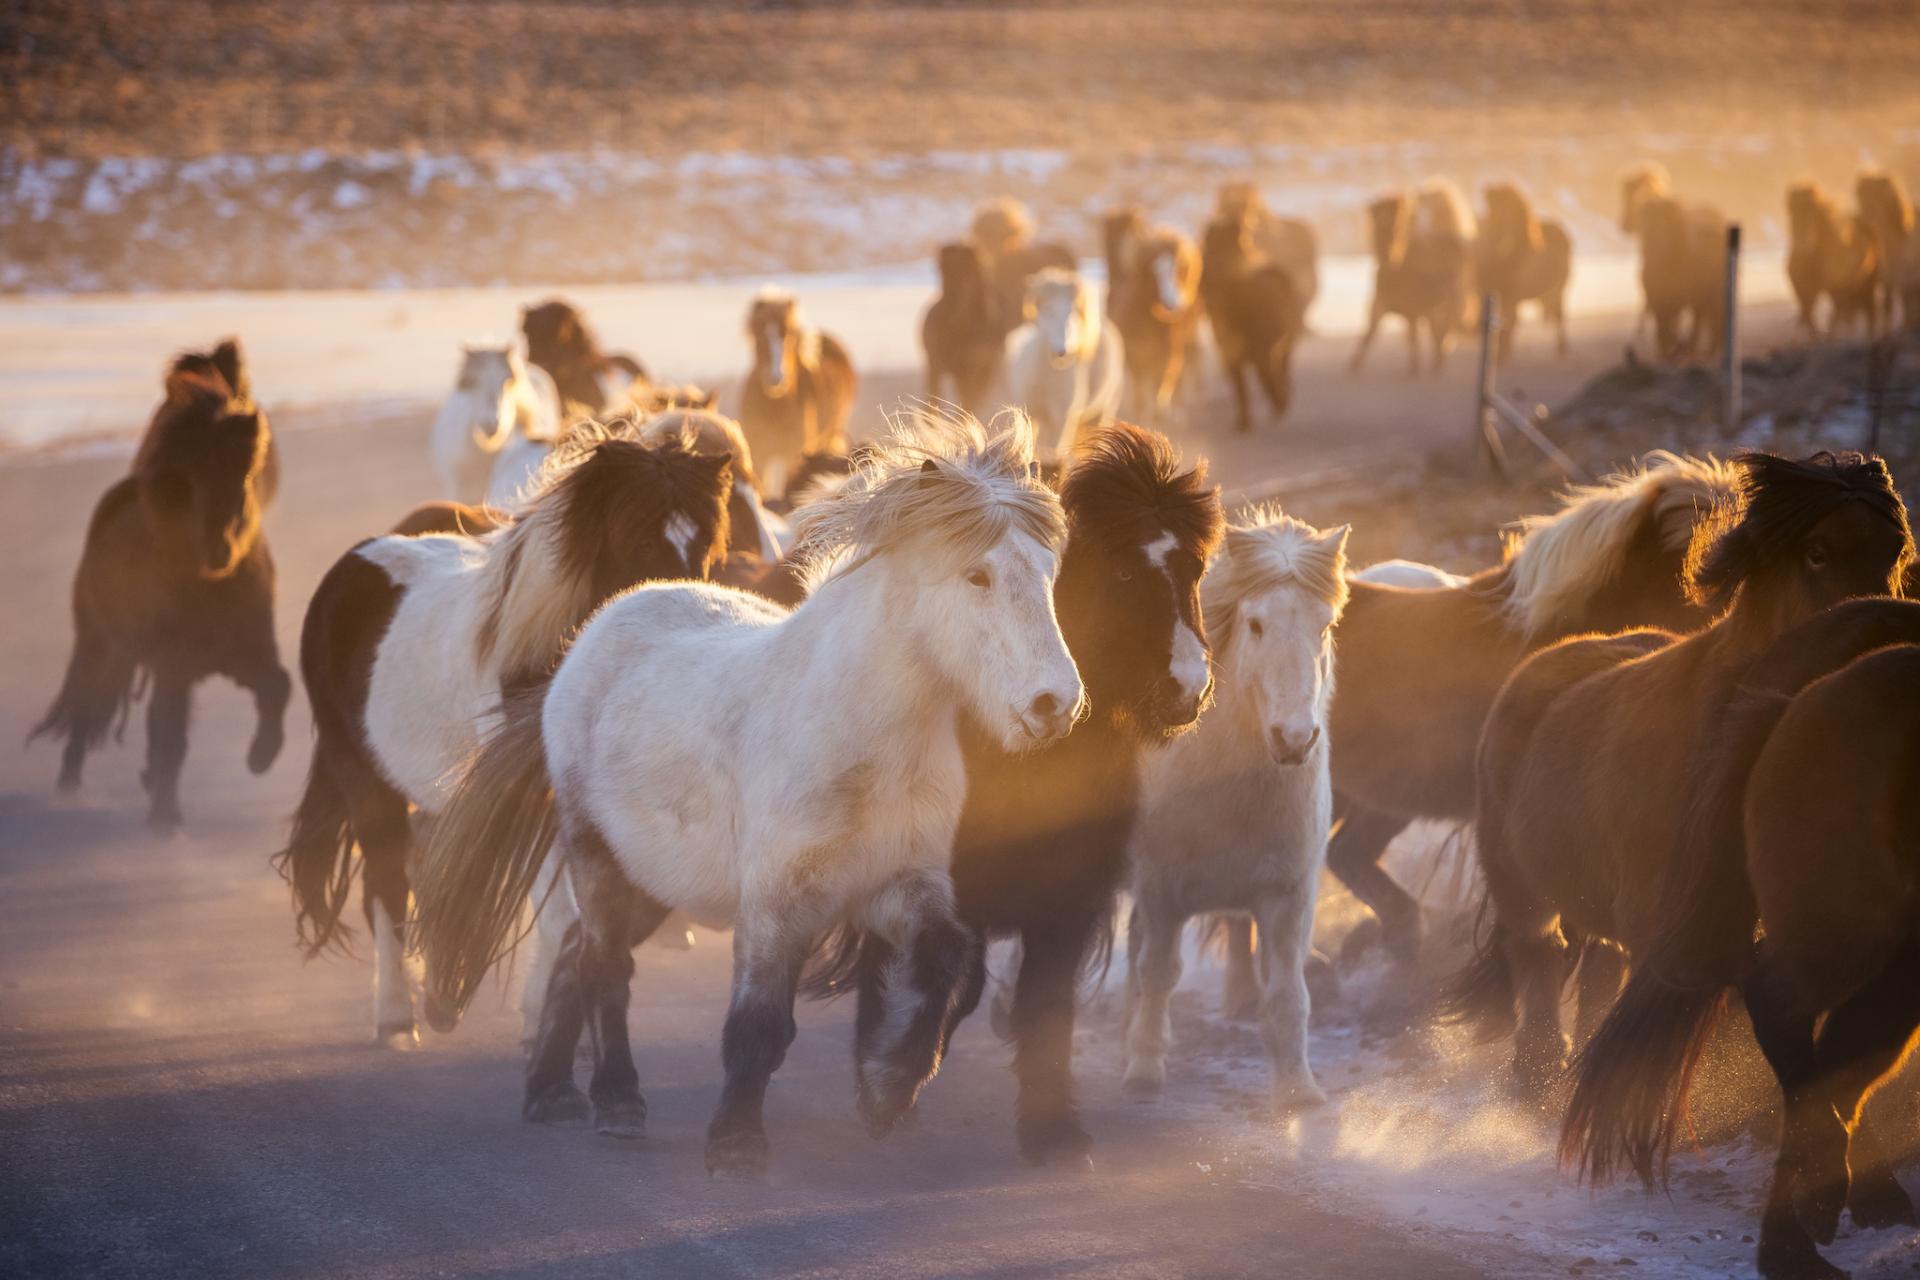 European Photography Awards Winner - Horses of the golden light